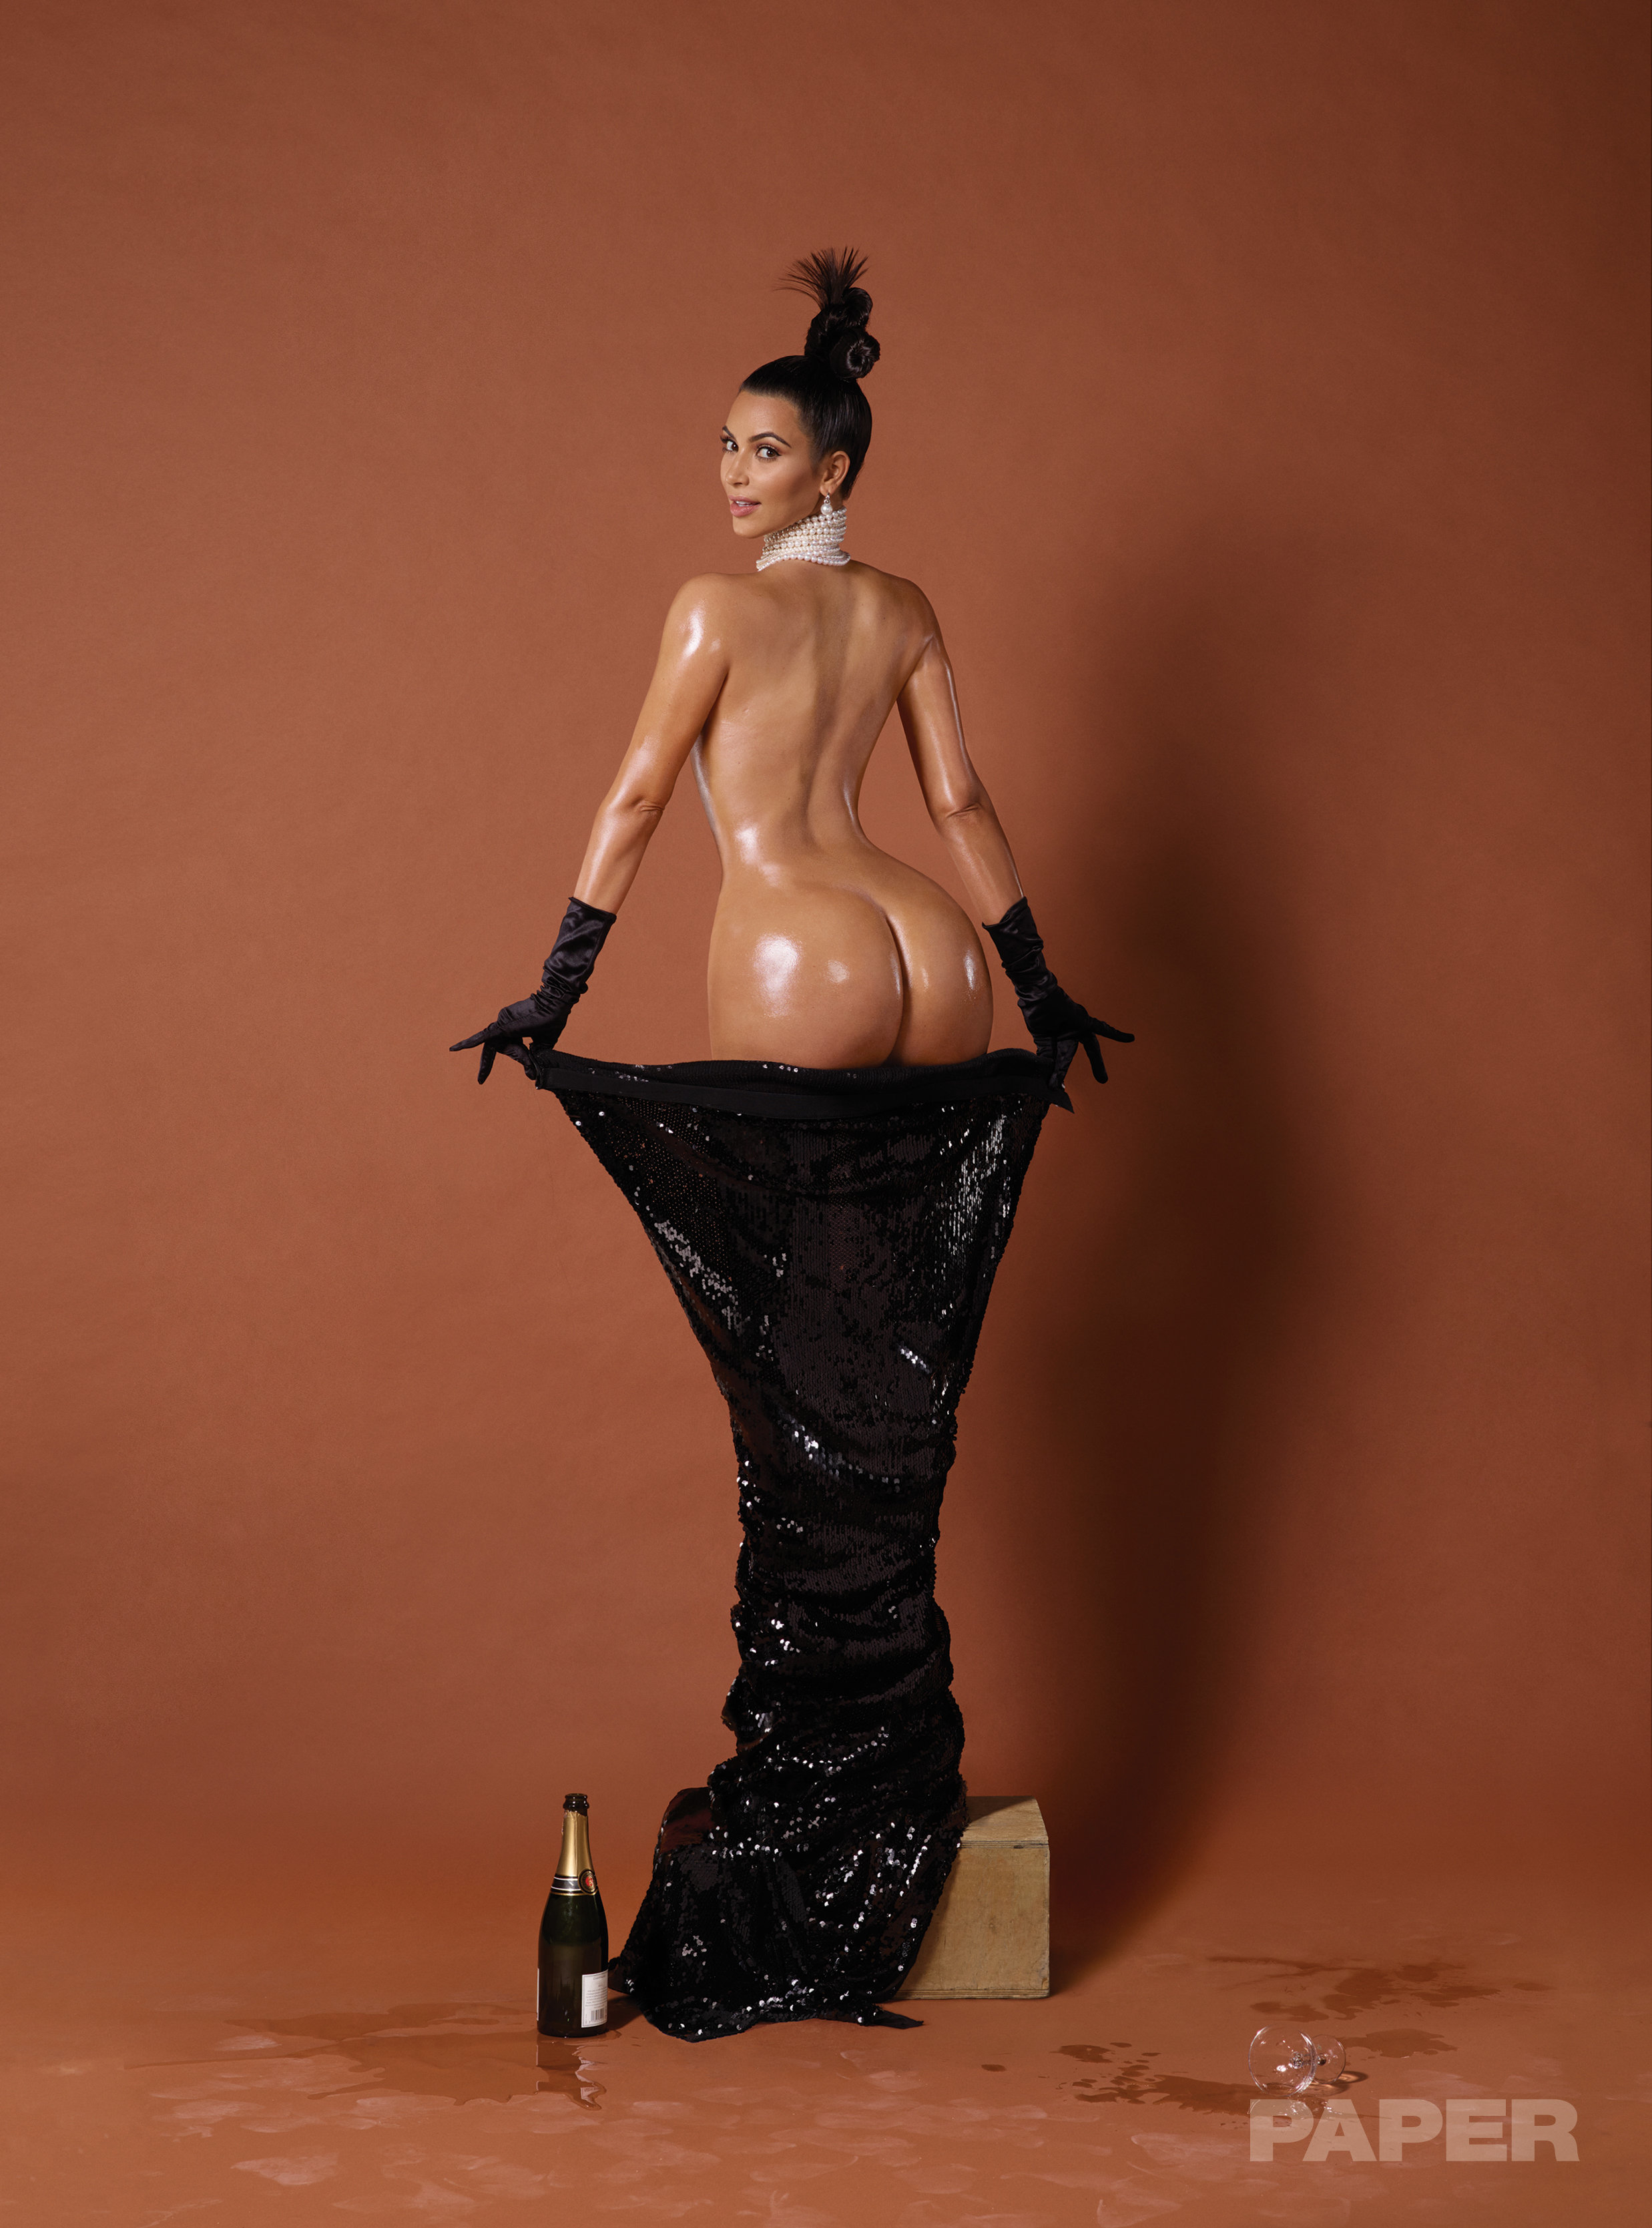 Kim kardashian porn pics